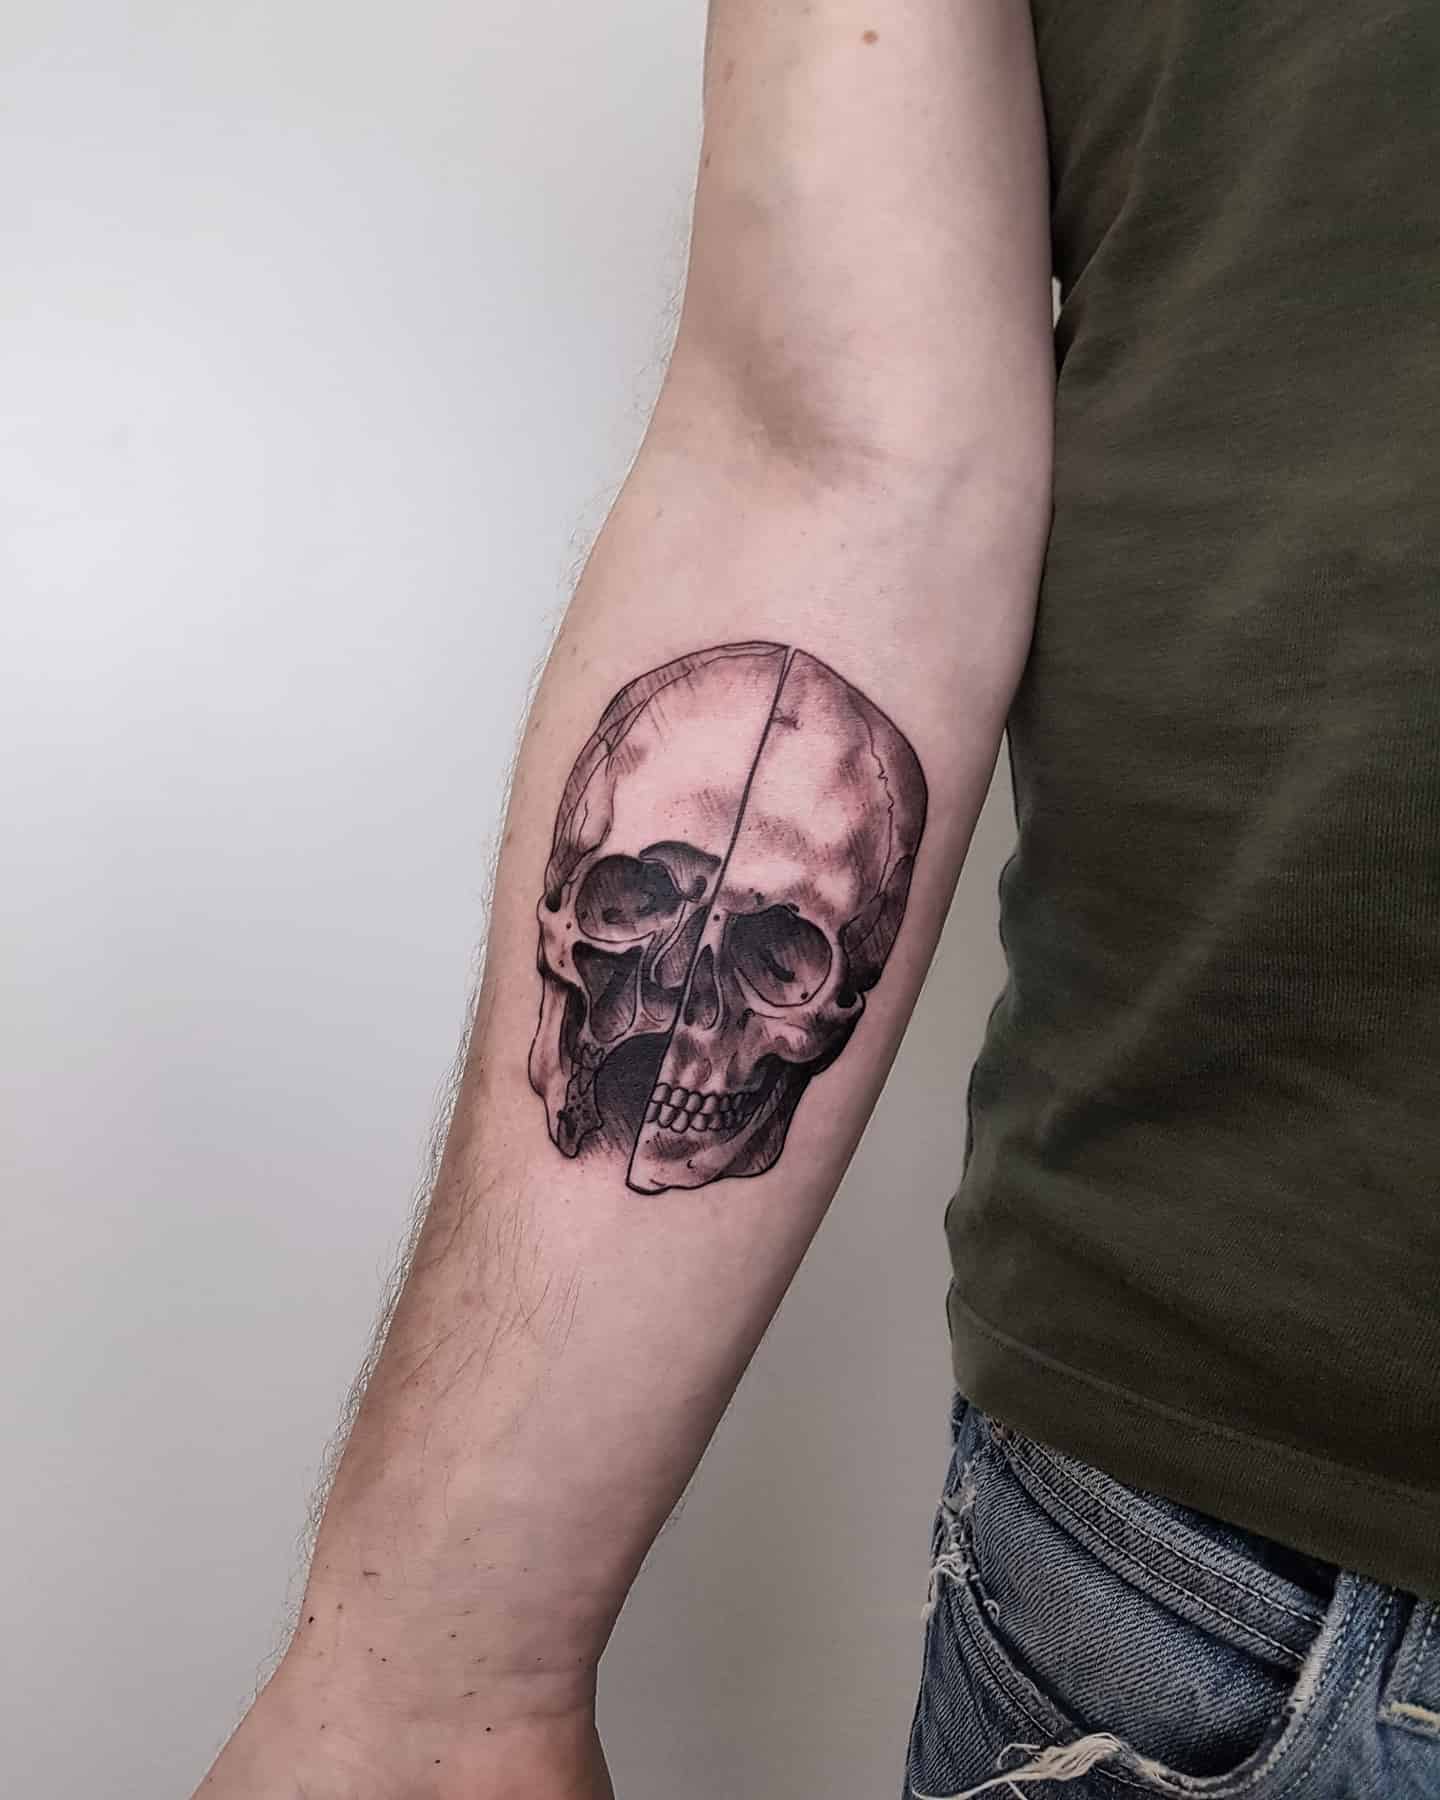 da vinci skull
-
#davinci #tattooart #tattoo #tattoos #tattooartist #ink #inked